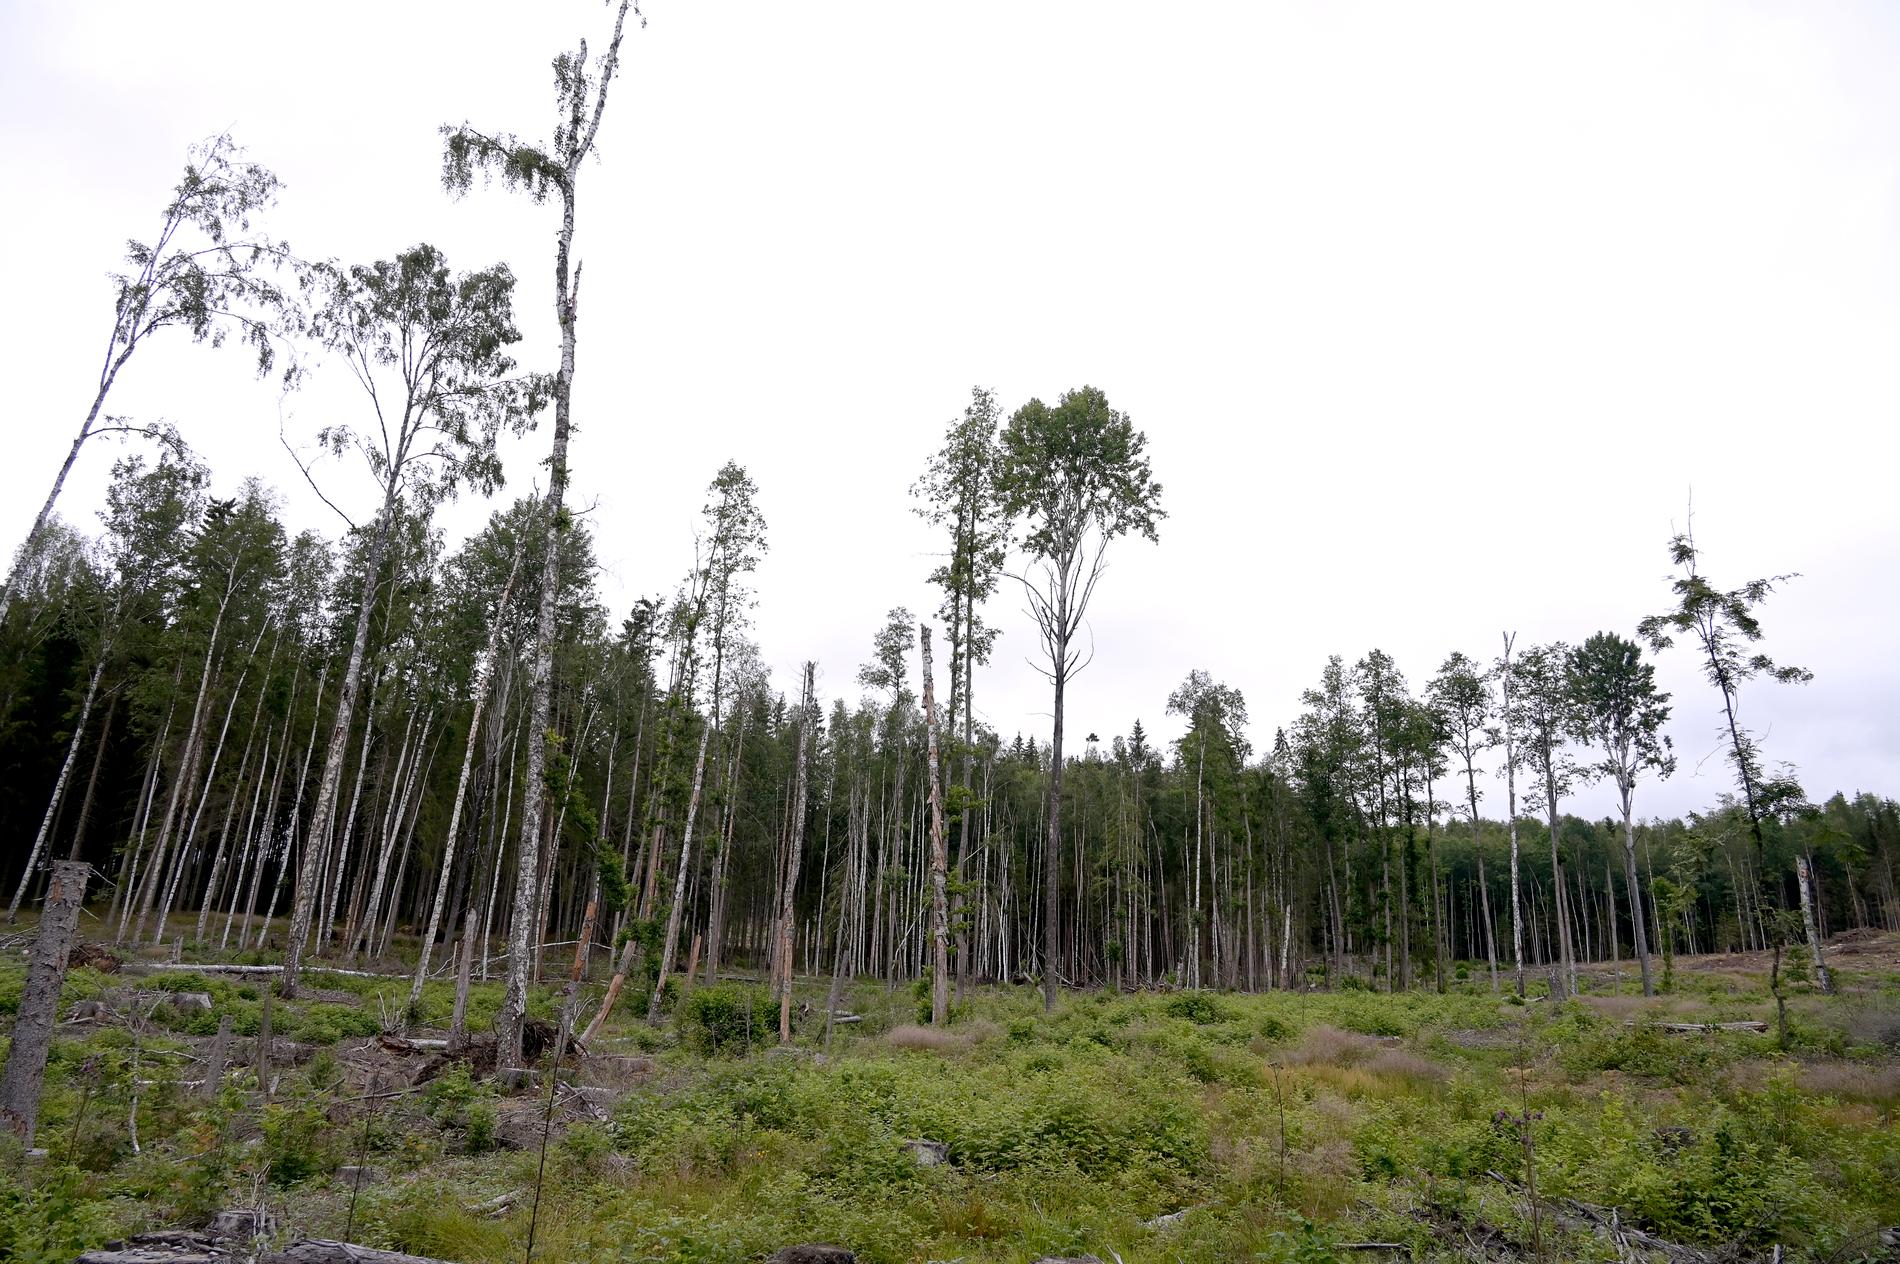 Naturvårdsverket och Skogsstyrelsen vill se en ökning av det hyggesfria skogsbruket. Arkivbild.